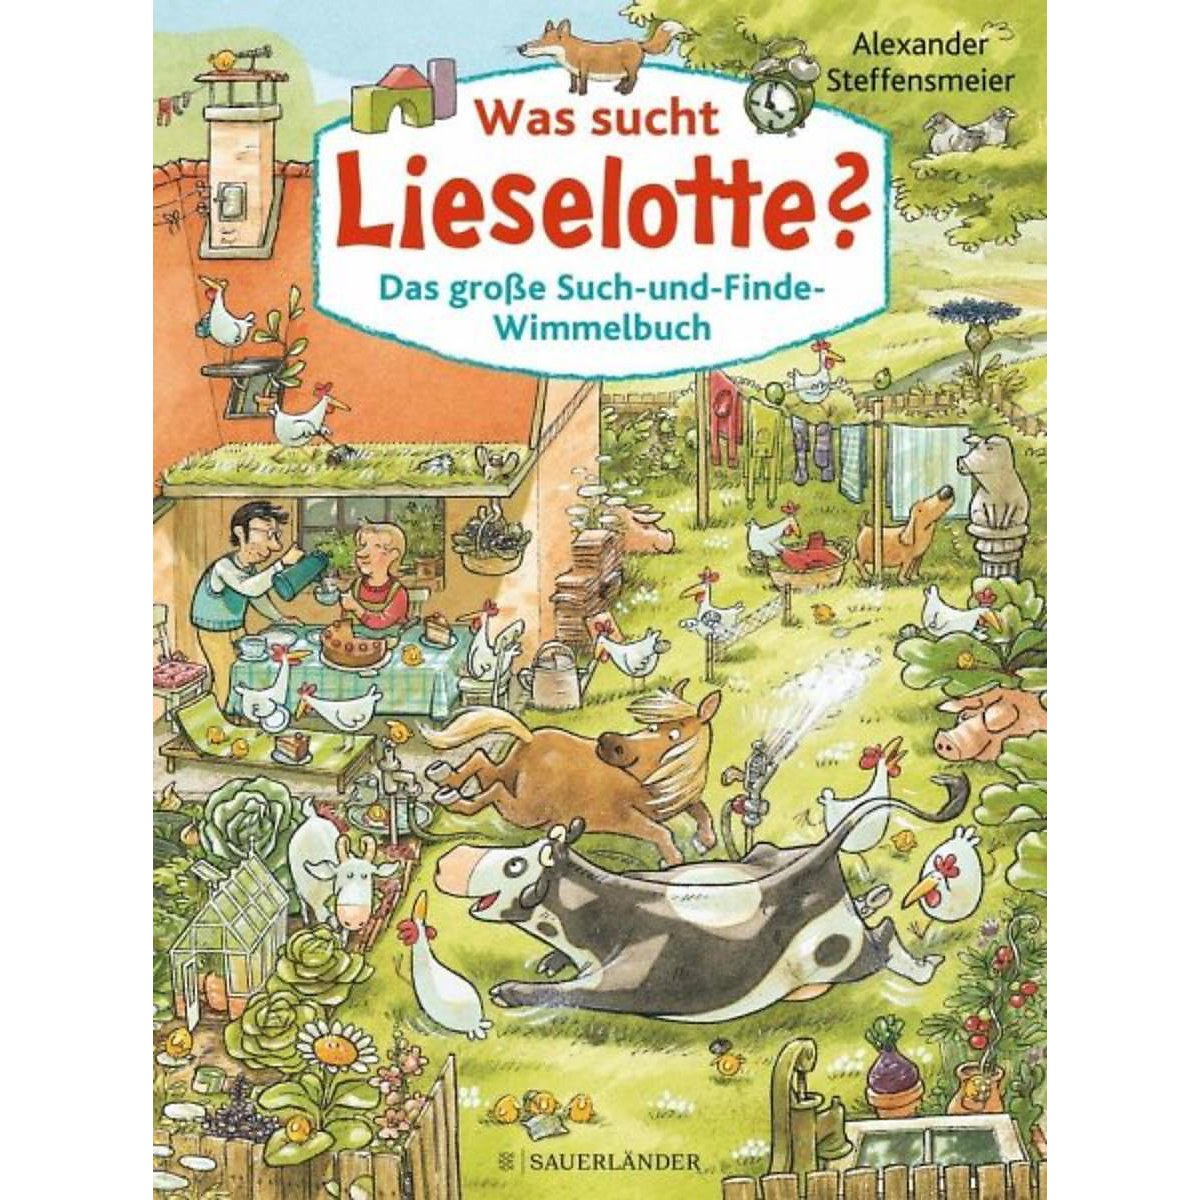 Was sucht Lieselotte? Das große Such-und-Finde-Wimmelbuch